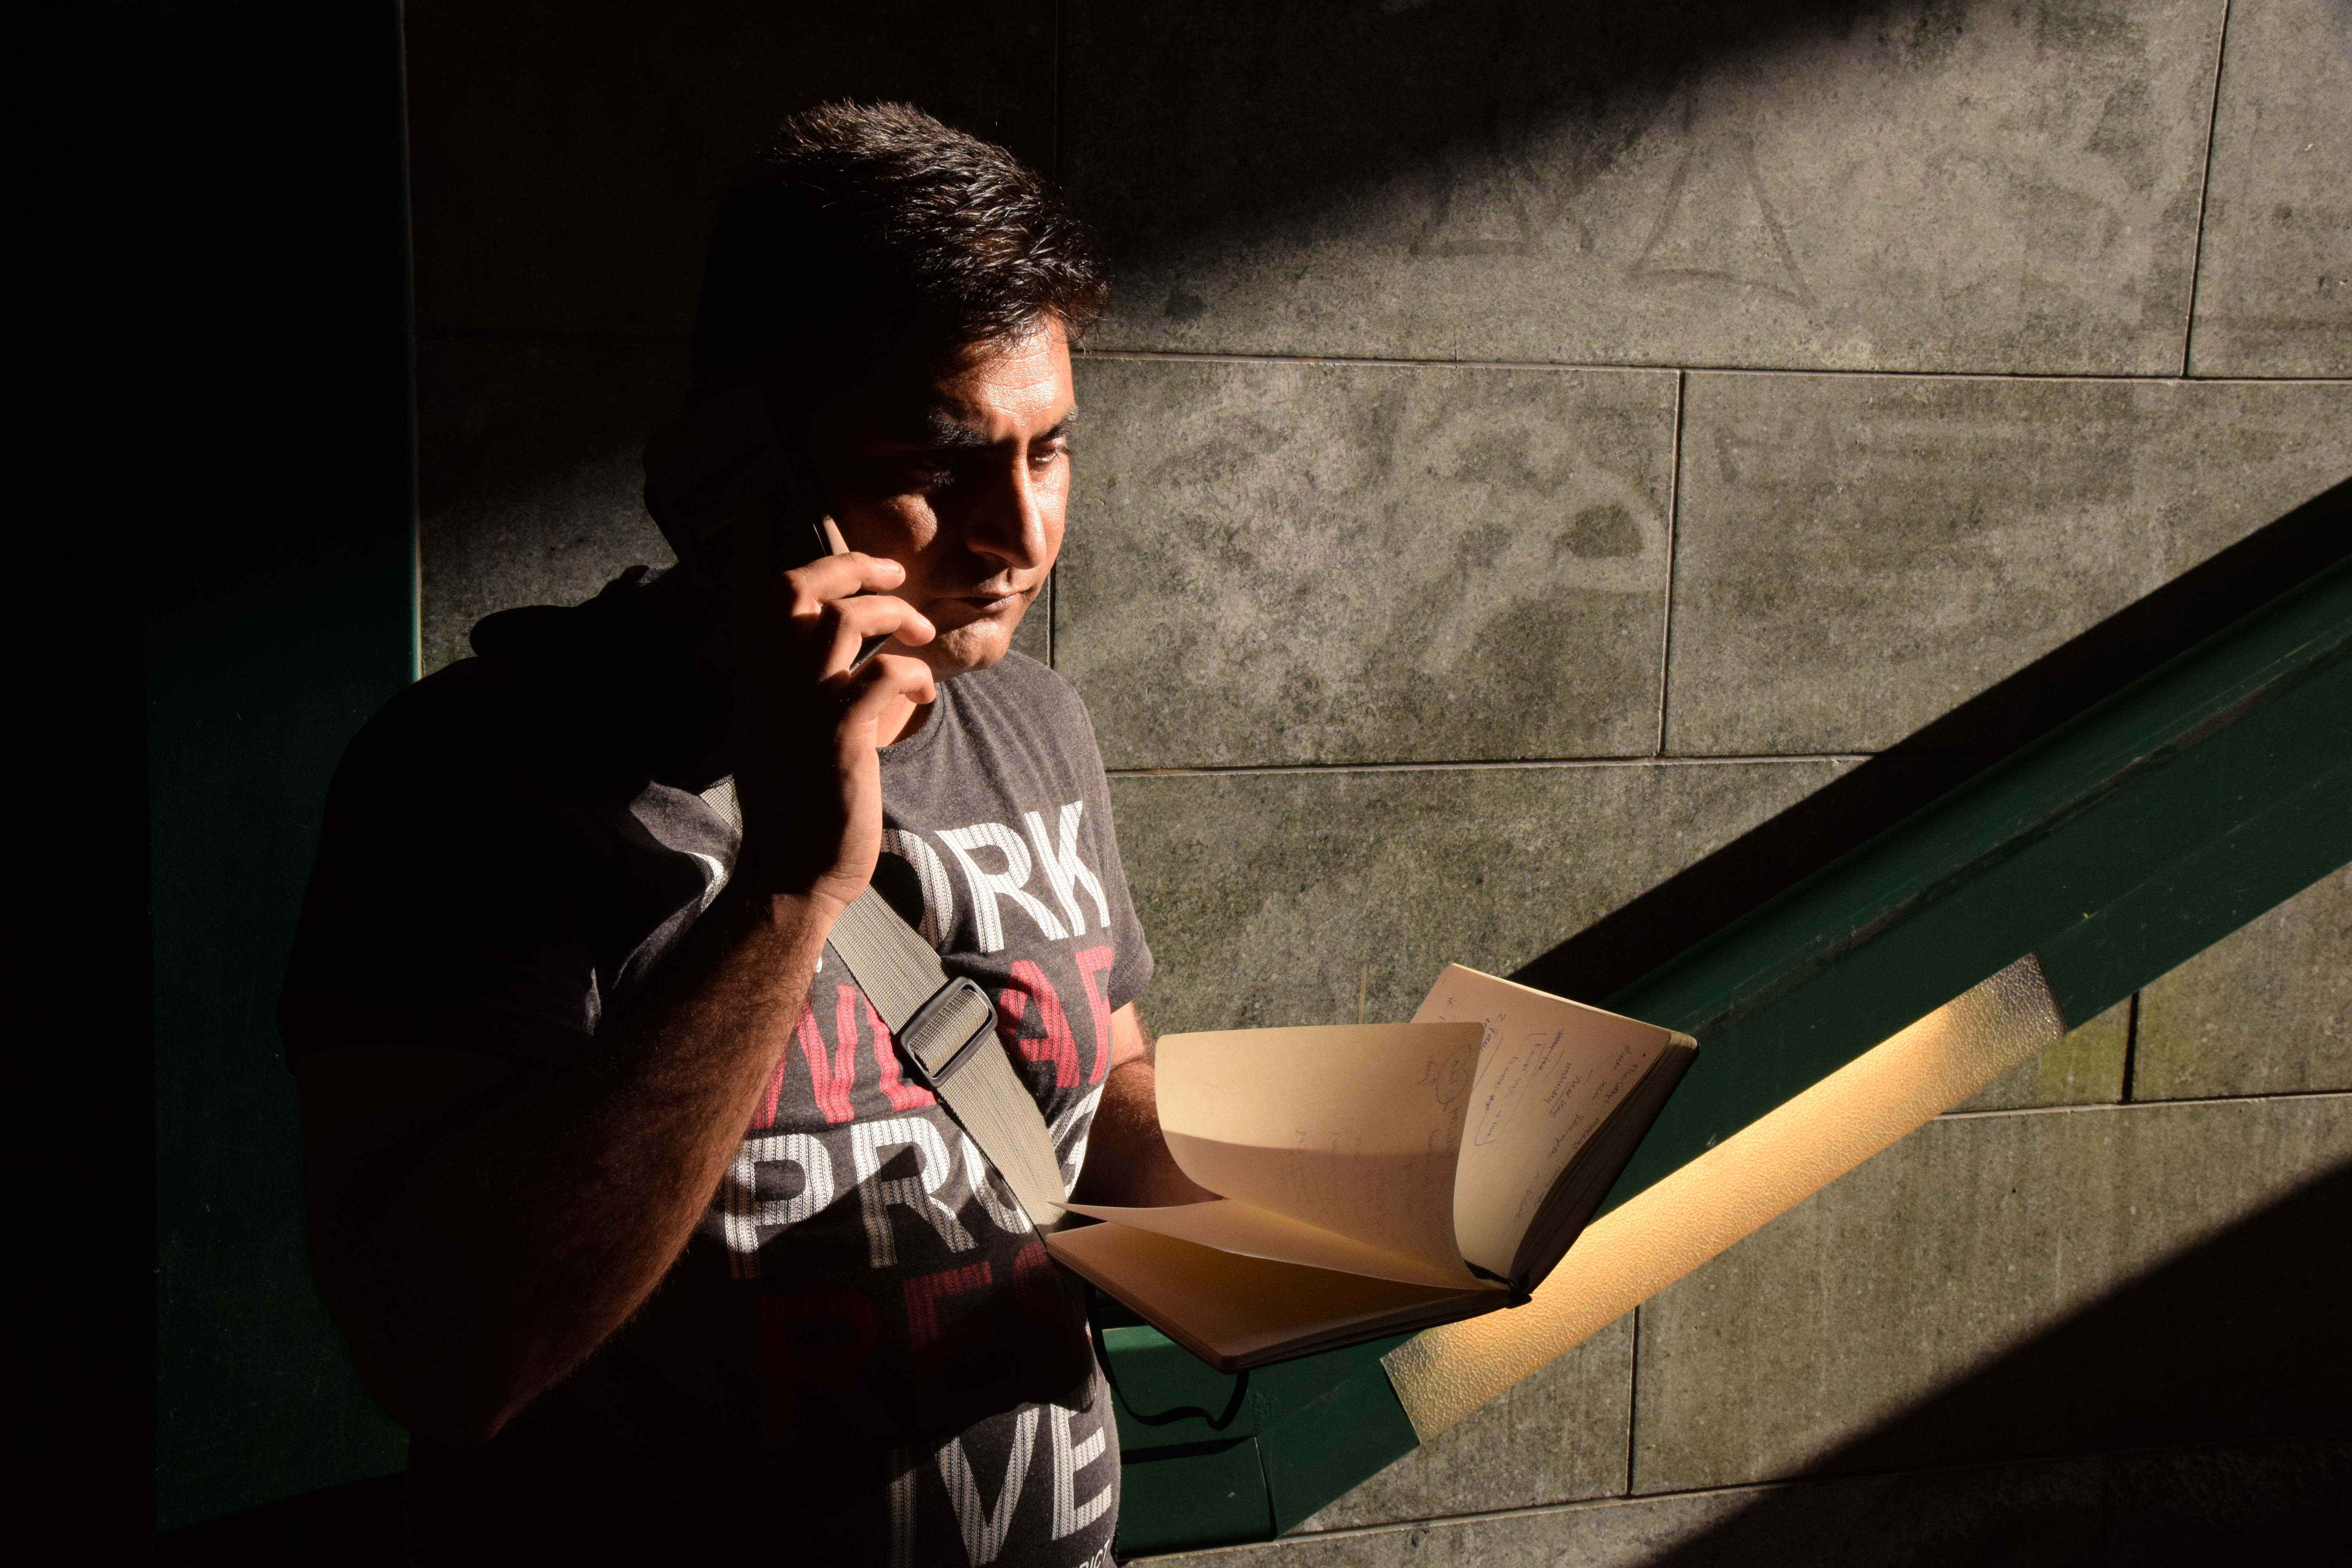 Samee wartet seit zwei Jahren auf seinen Asylbescheid. Er fragt sich: „Wenn es keinen Ort für dich gibt, was ist dann der Sinn des Lebens?“ 
Foto: Sascha Lübbe